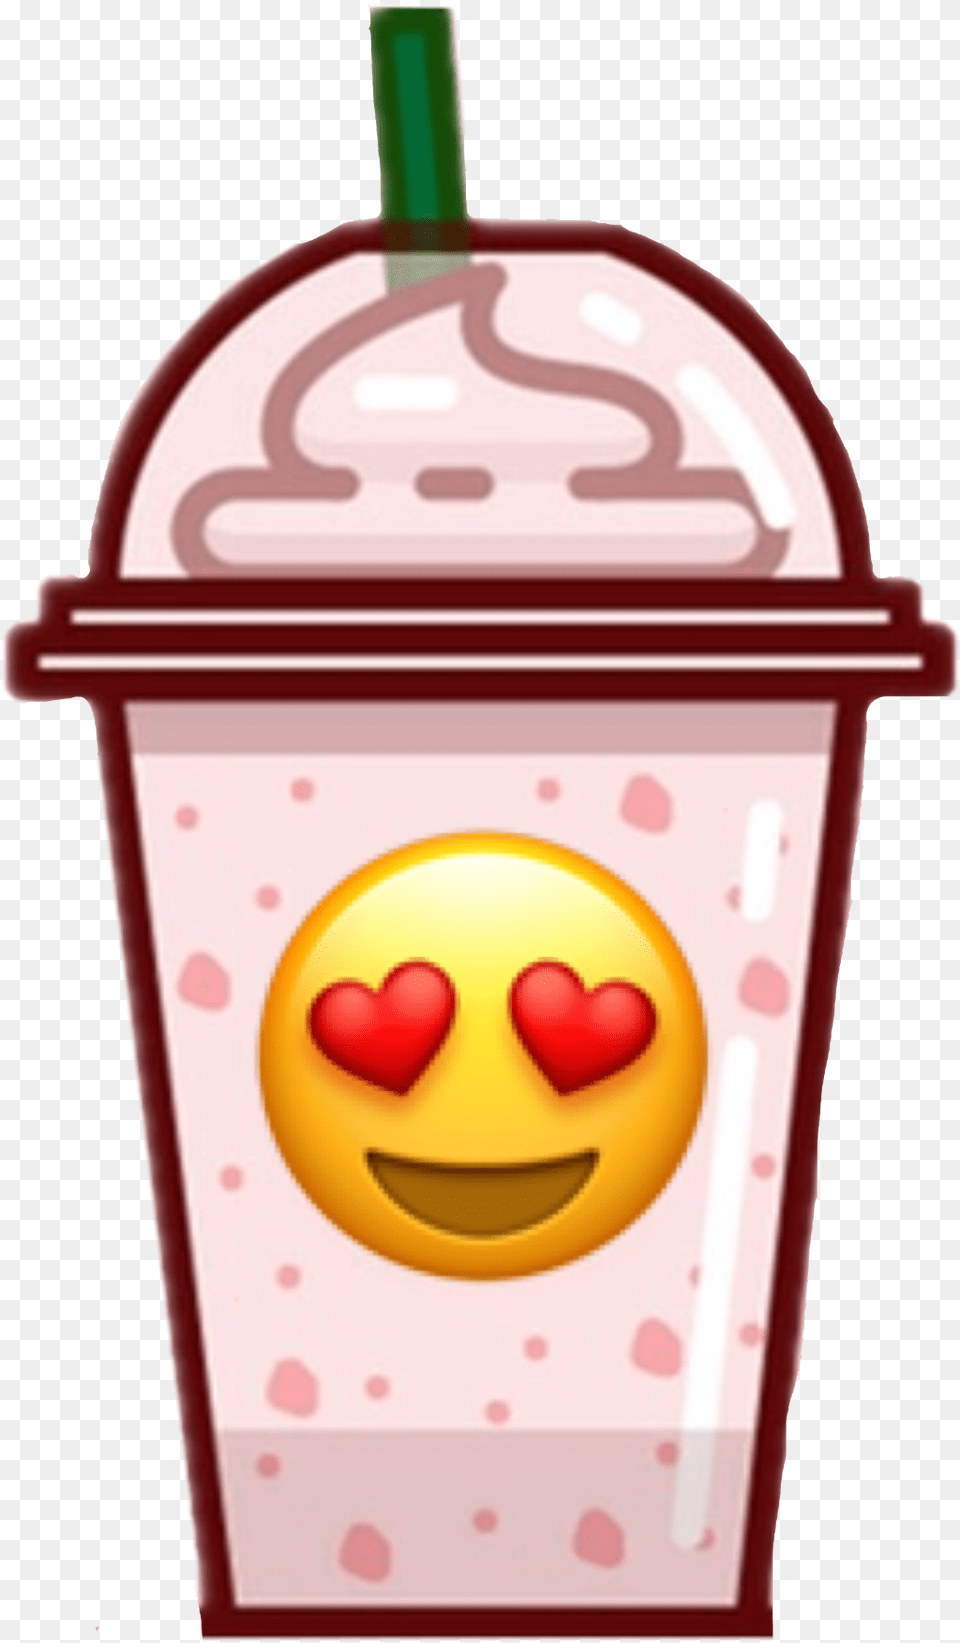 Starbucks Emoji Sticker Starbucks Emoticon, Beverage, Juice, Cream, Dessert Free Transparent Png